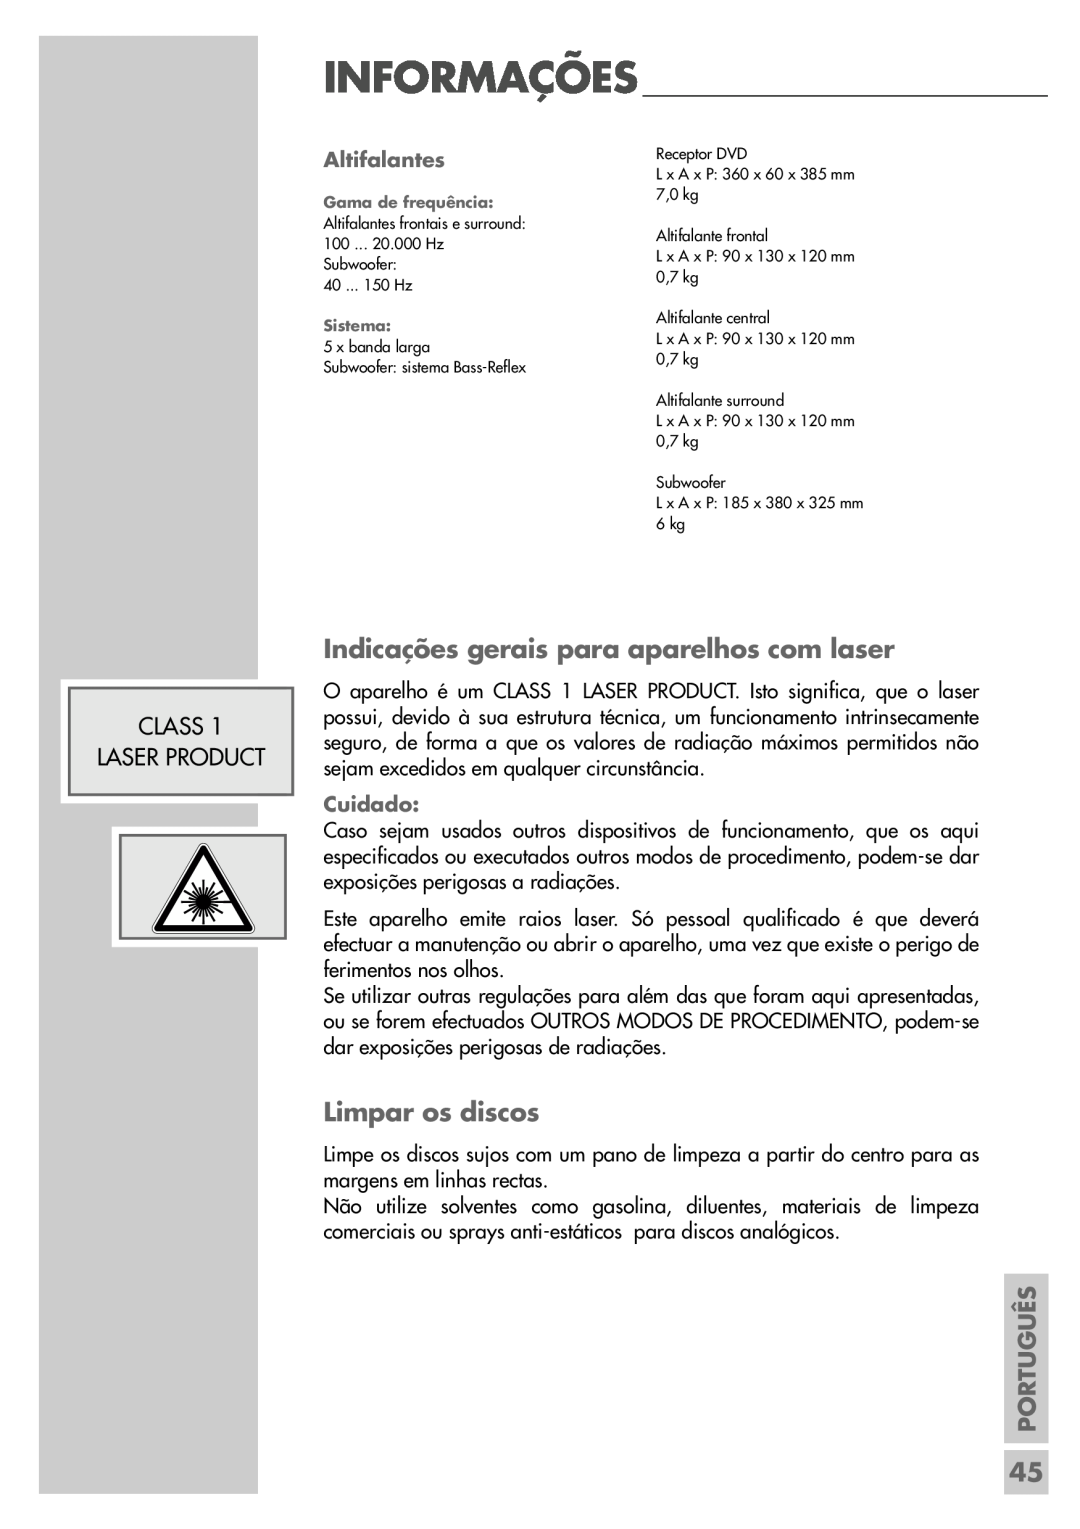 Grundig DR 5400 DD manual Indicações gerais para aparelhos com laser, Limpar os discos, Informações, Class Laser Product 